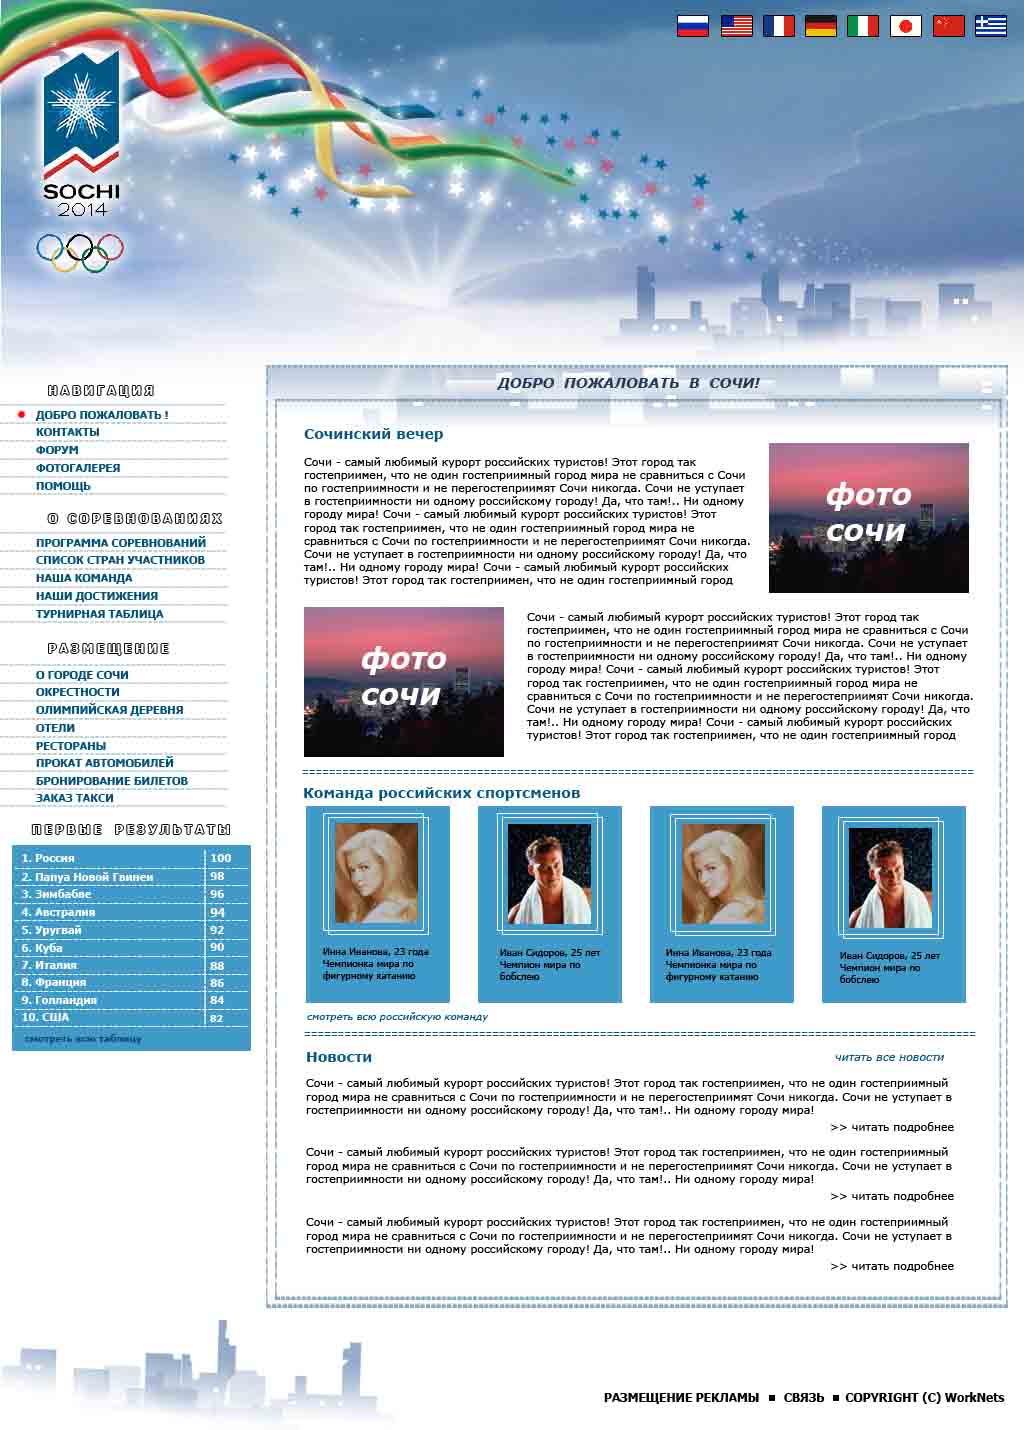 Дизайн сайта олимпиады 2014